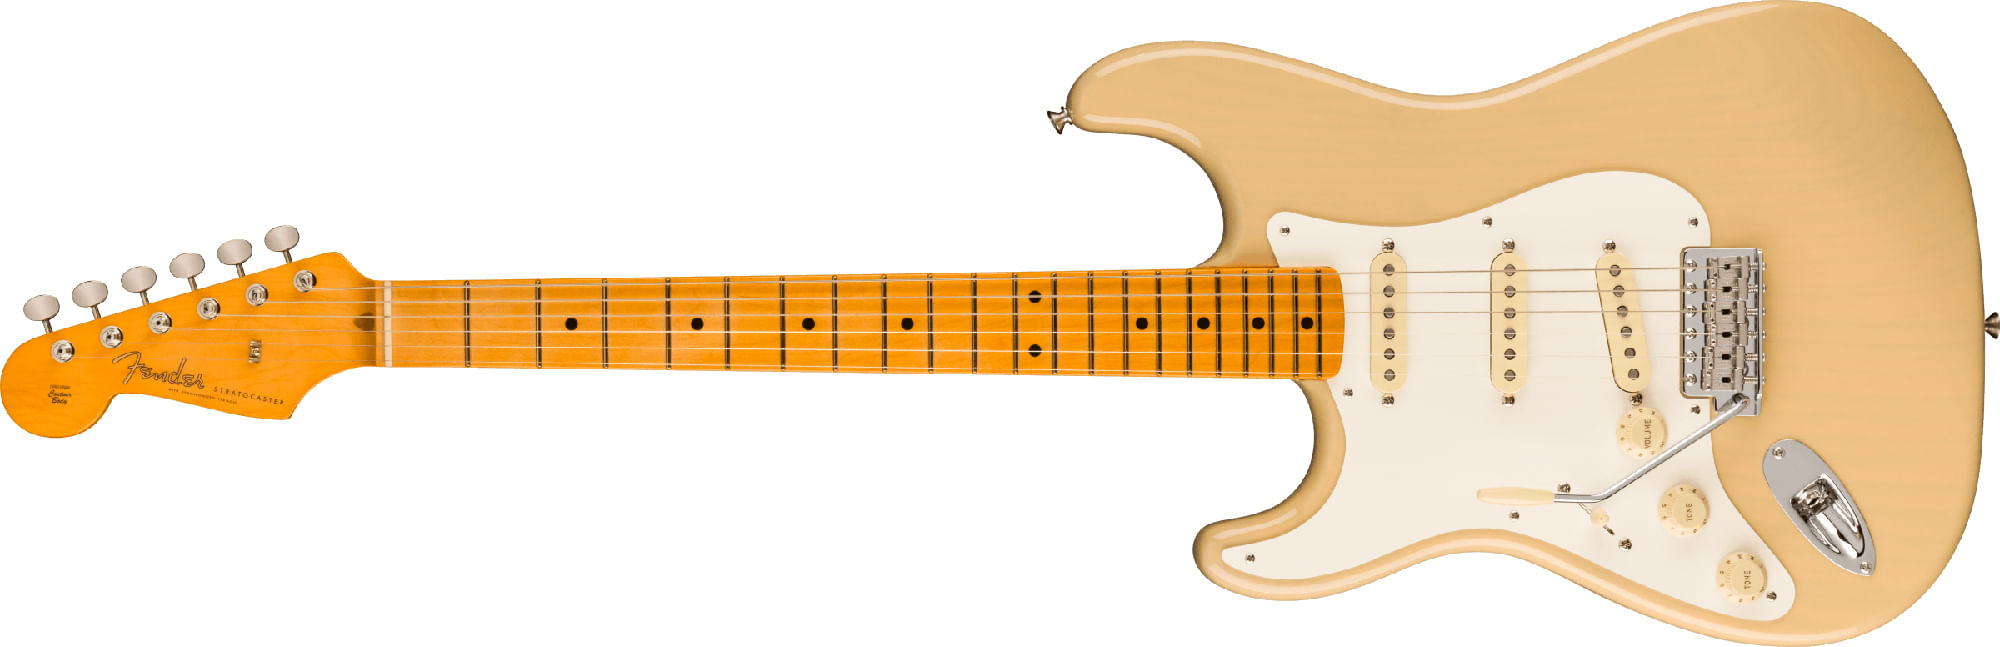 Fender American Vintage II 1957 Stratocaster - Maple, Vintage Blonde, Left